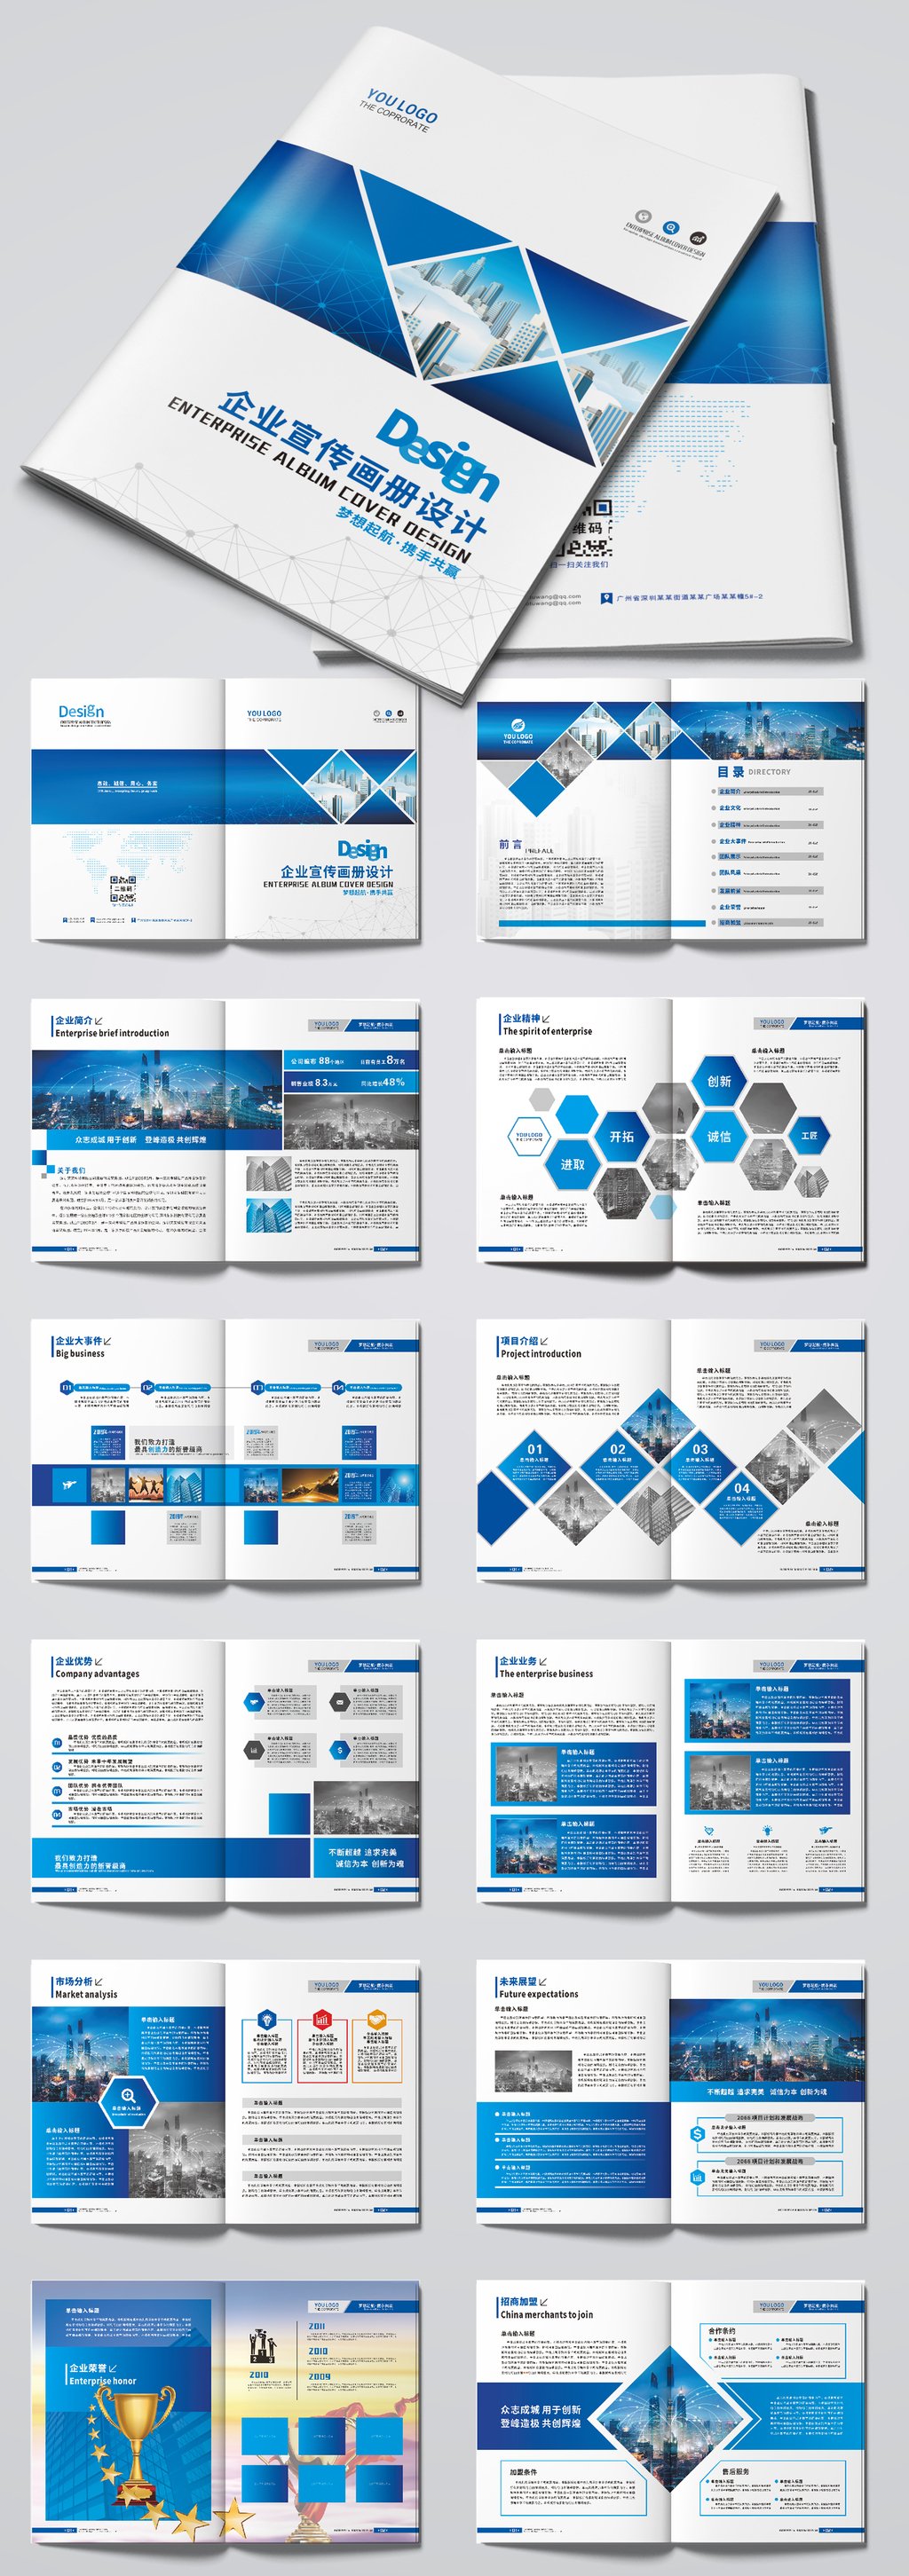 原创大气蓝色科技企业画册公司形象宣传画册设计模板-版权可商用-版权可商用